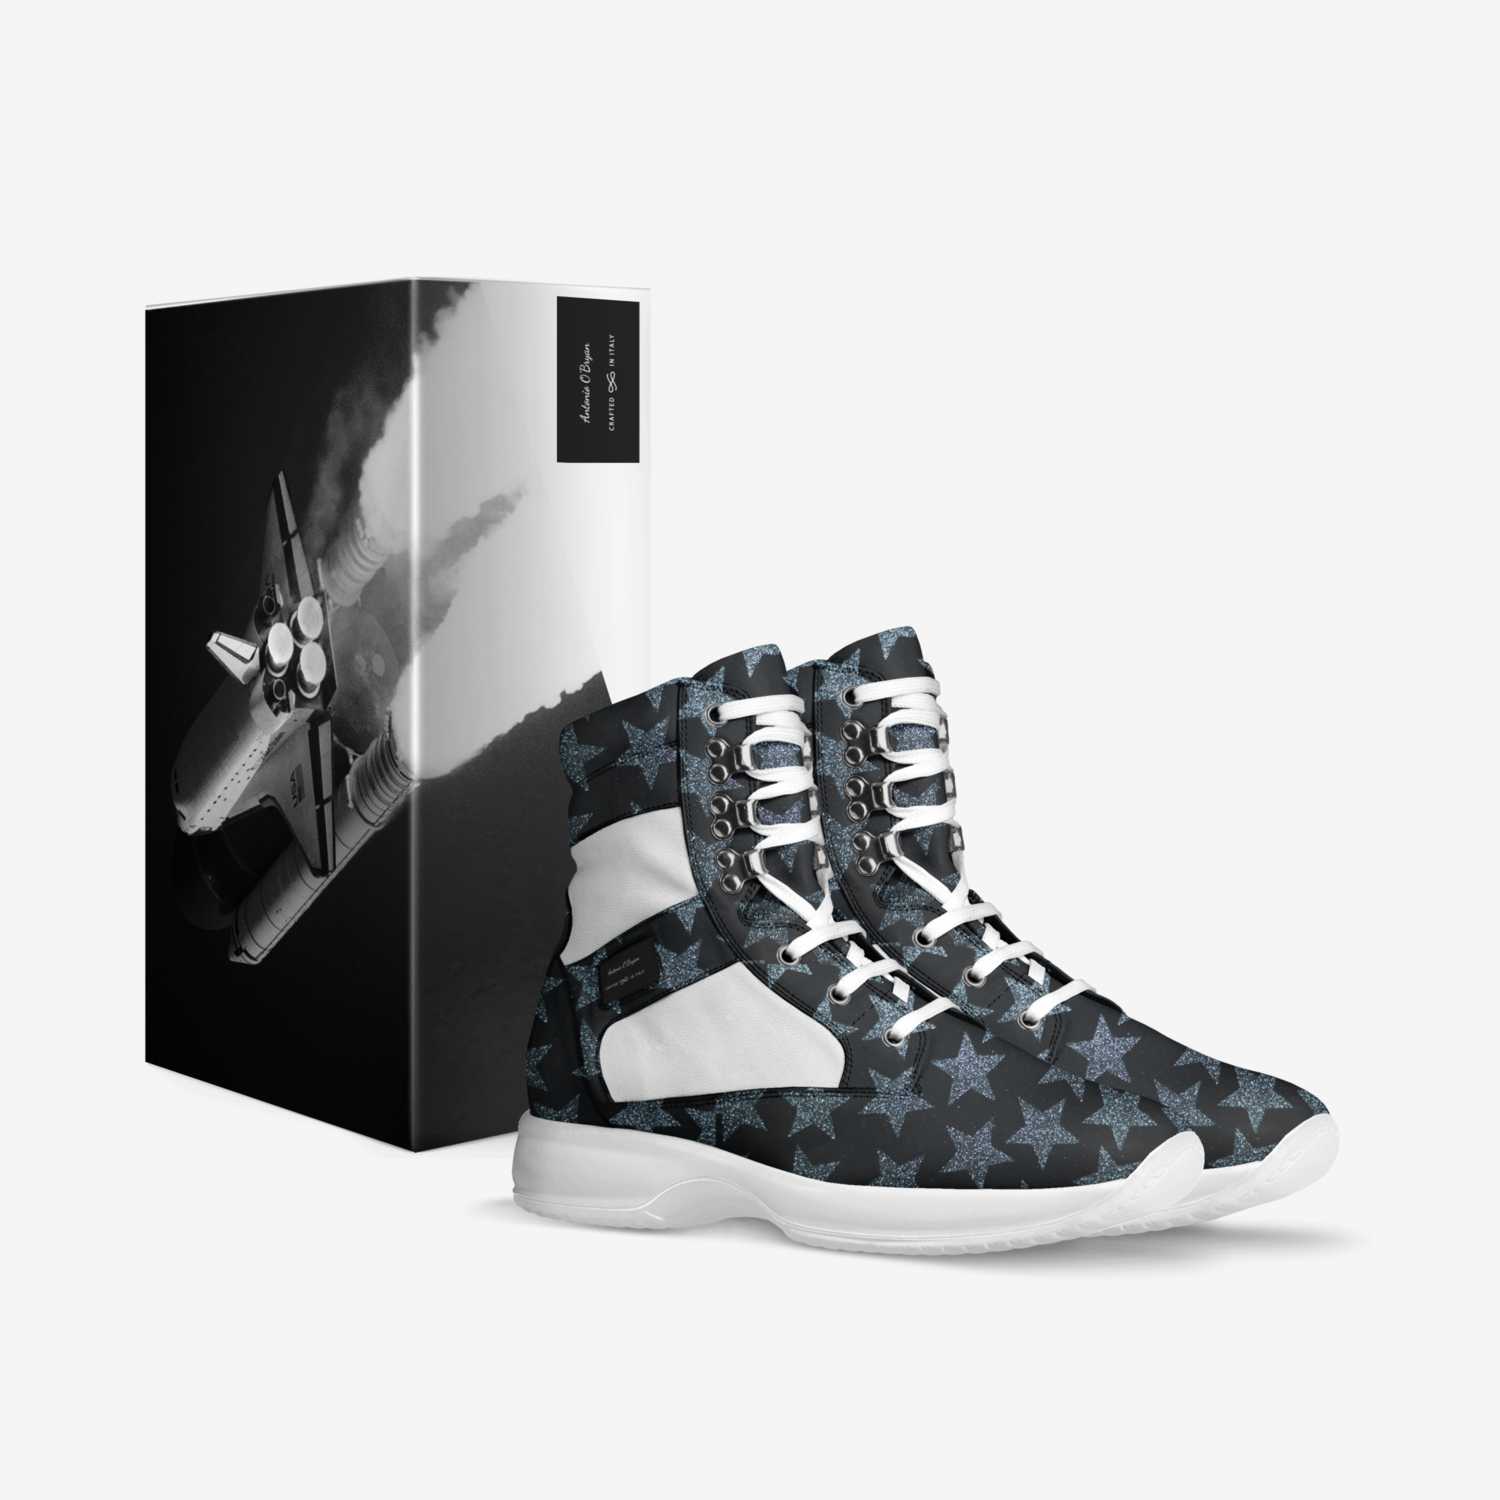 AntonioObryan custom made in Italy shoes by Antonio Hubert | Box view